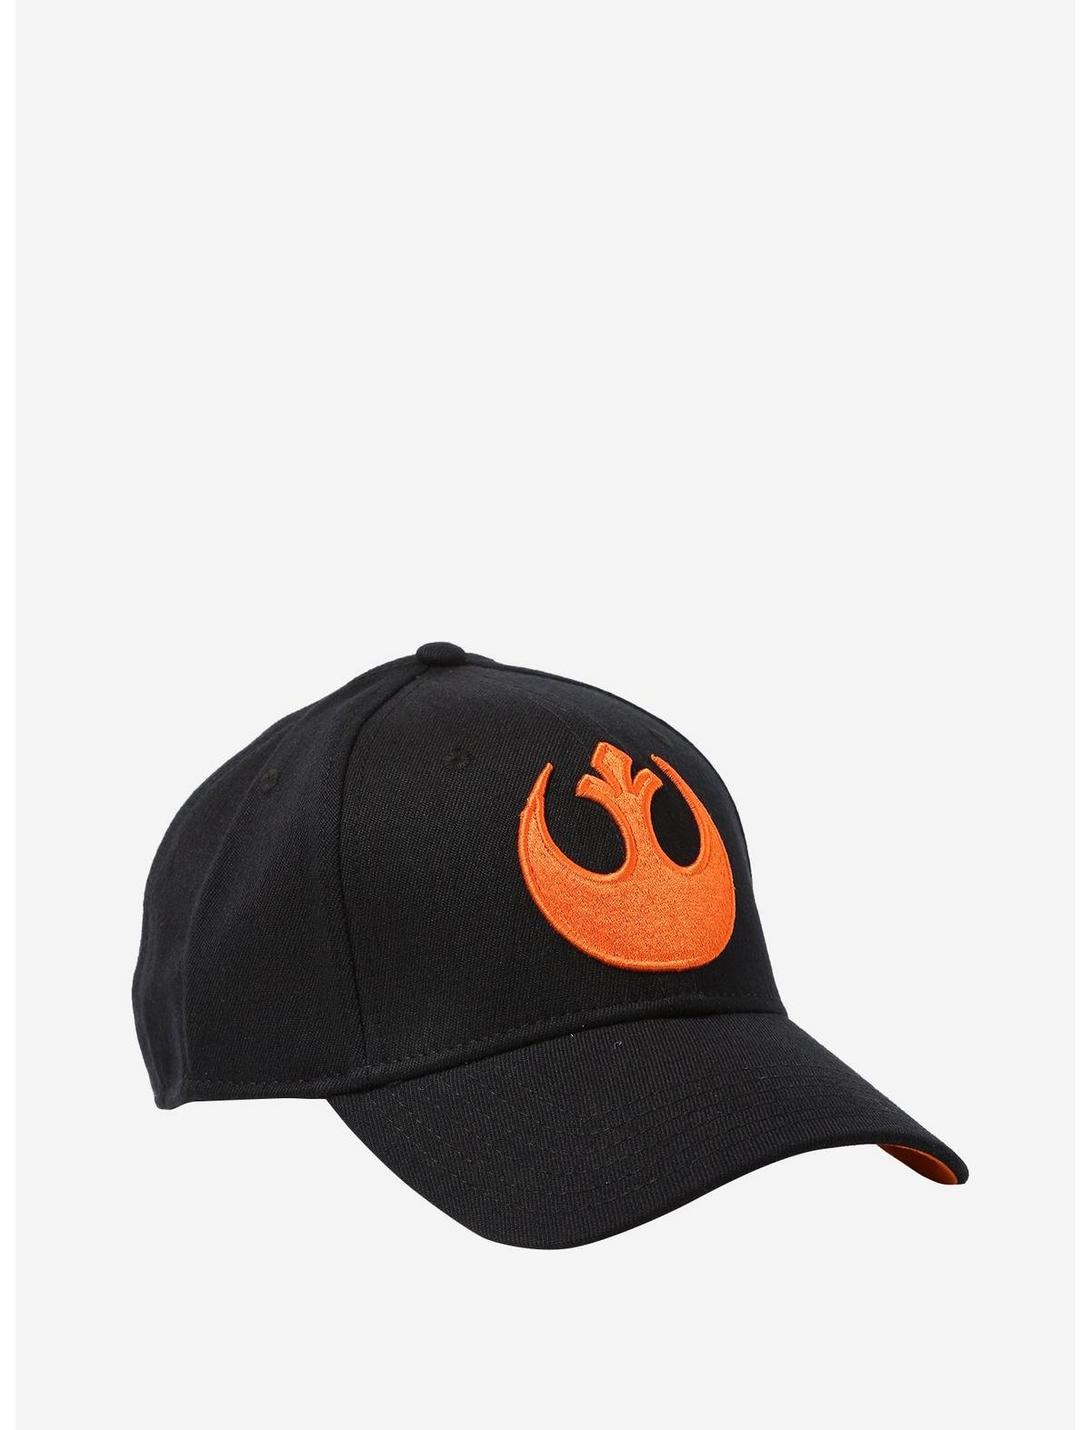 Star Wars Rebel Flex Hat, , hi-res